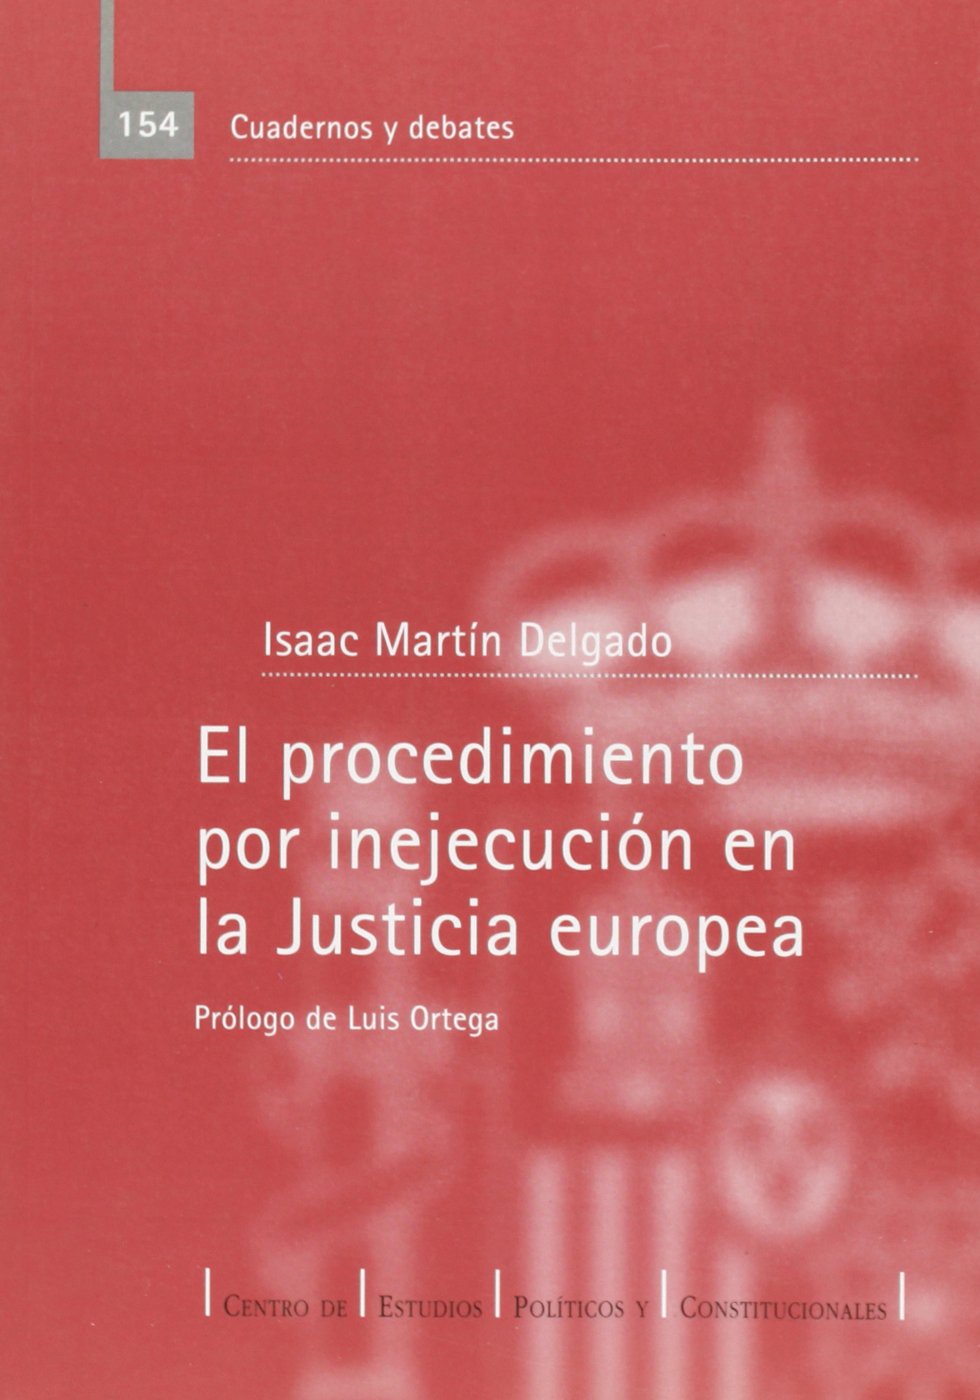 El procedimiento por inejecución en la Justicia europea